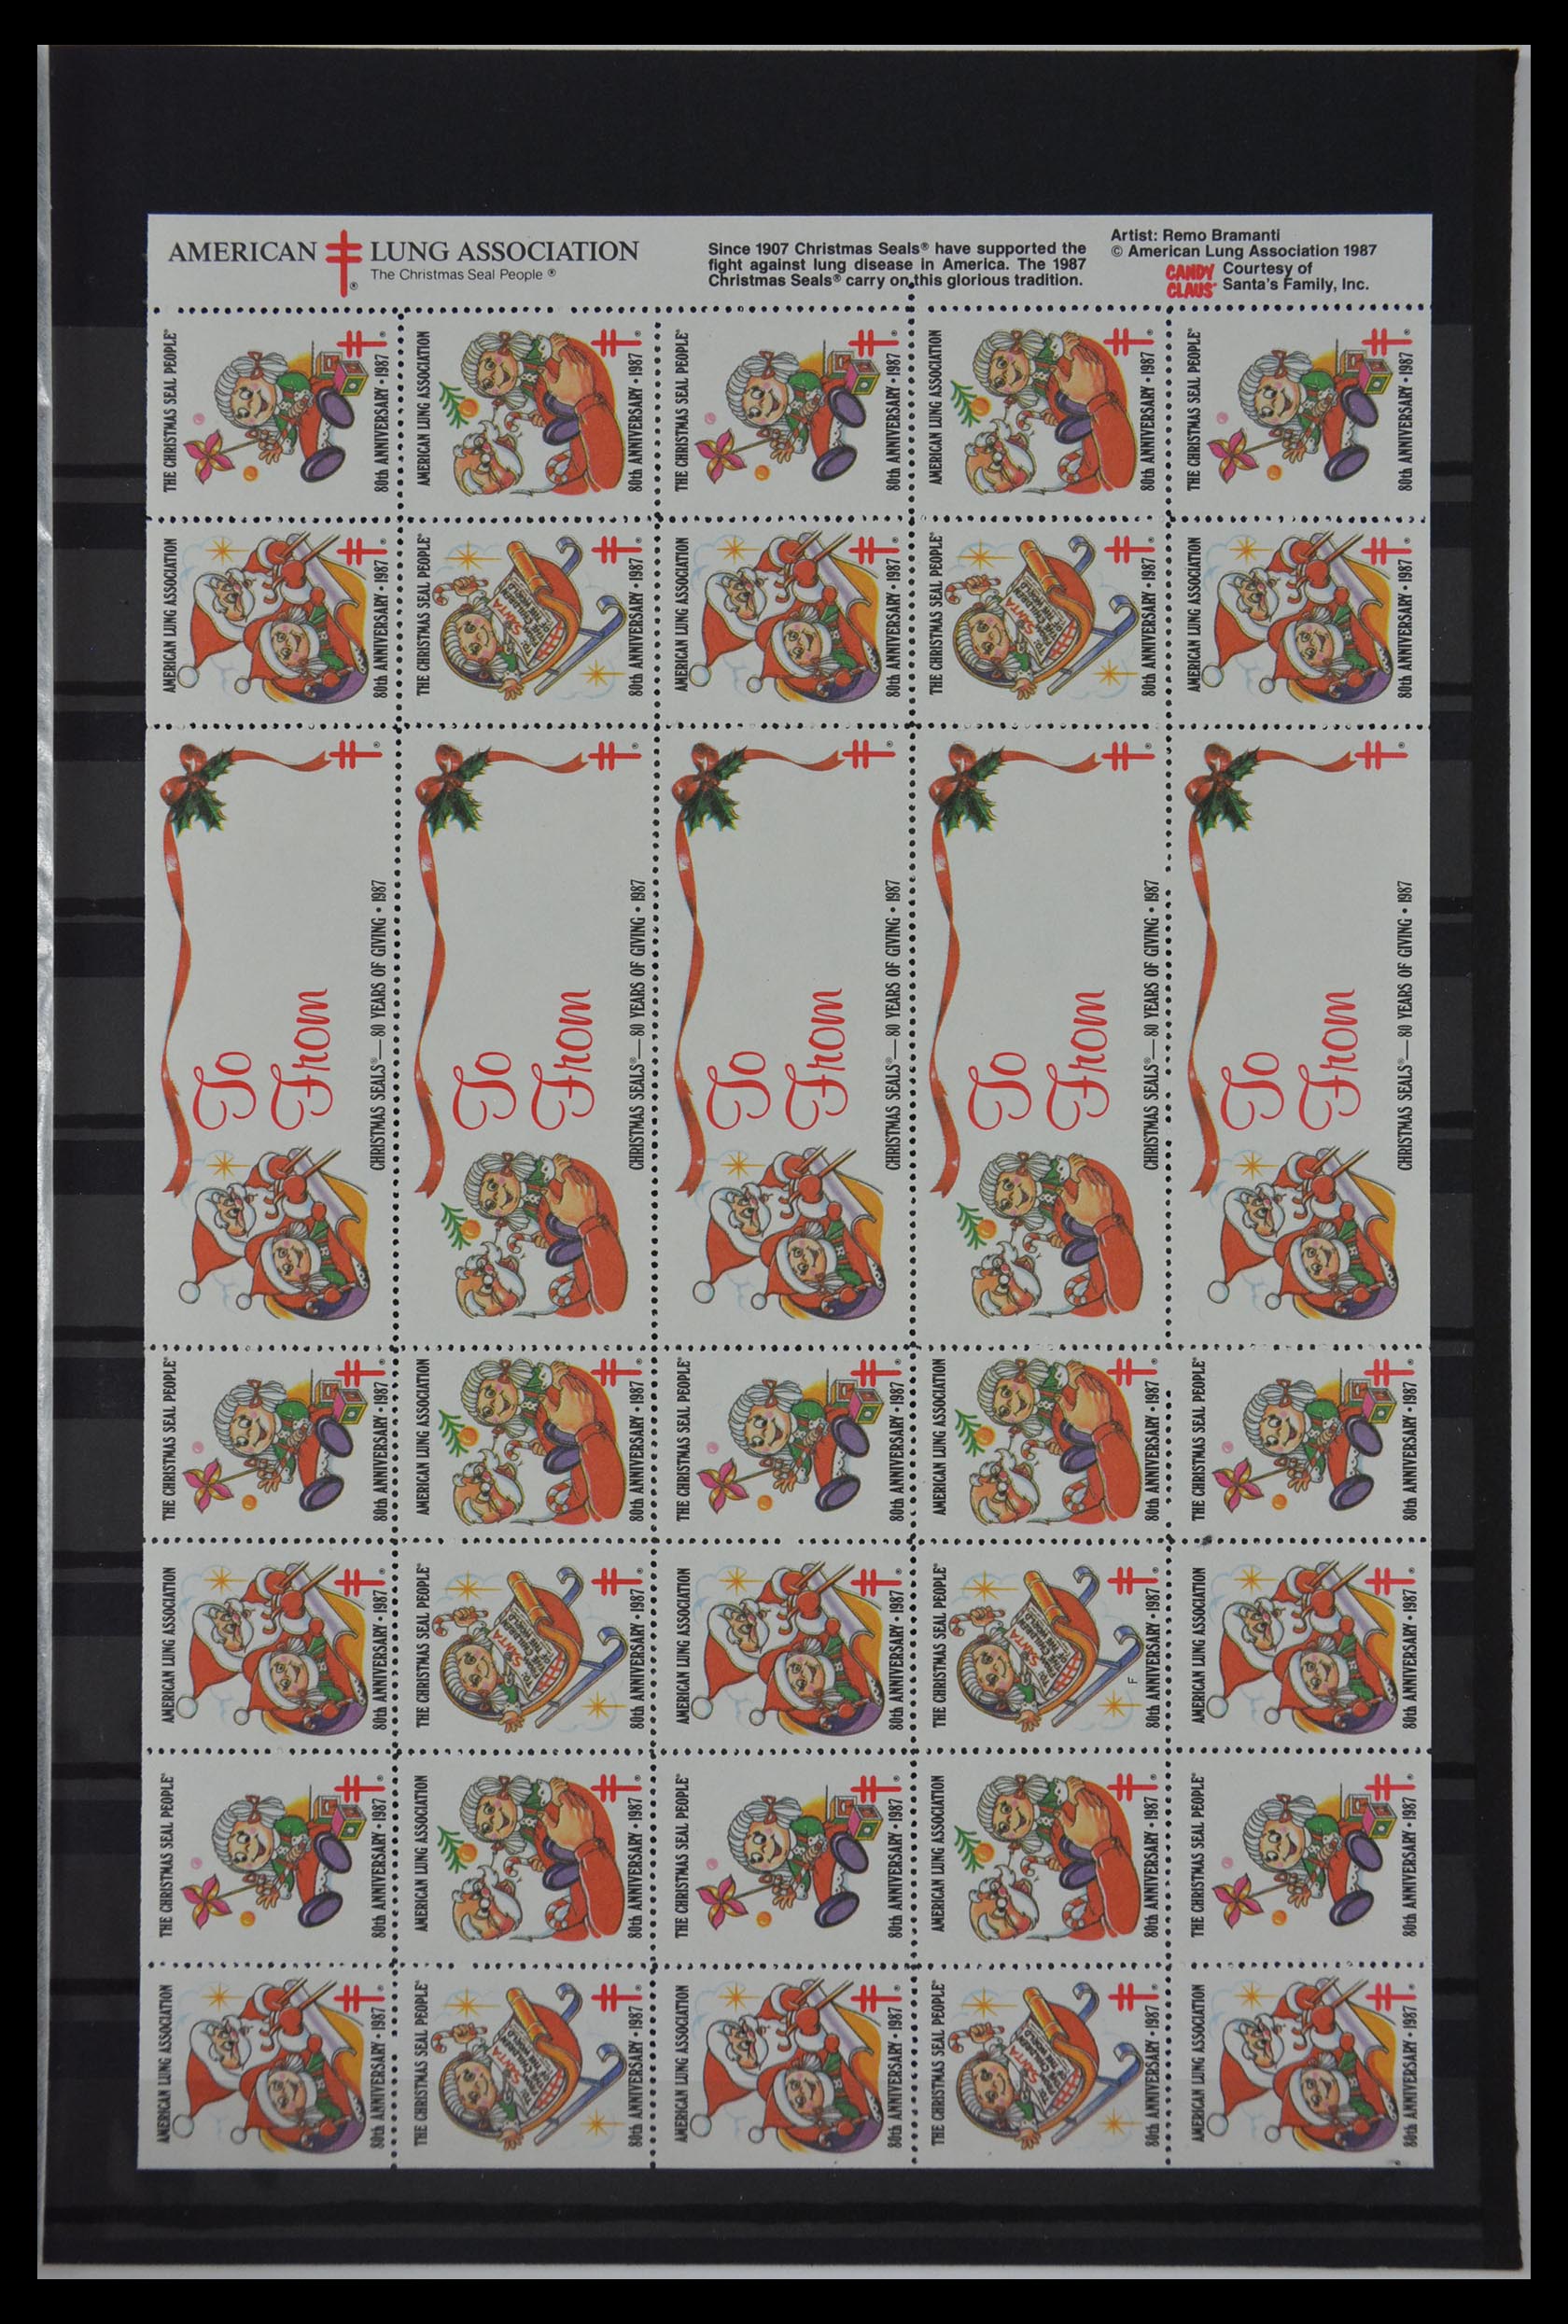 29587 017 - 29587 USA Christmas seals 1907-1978.